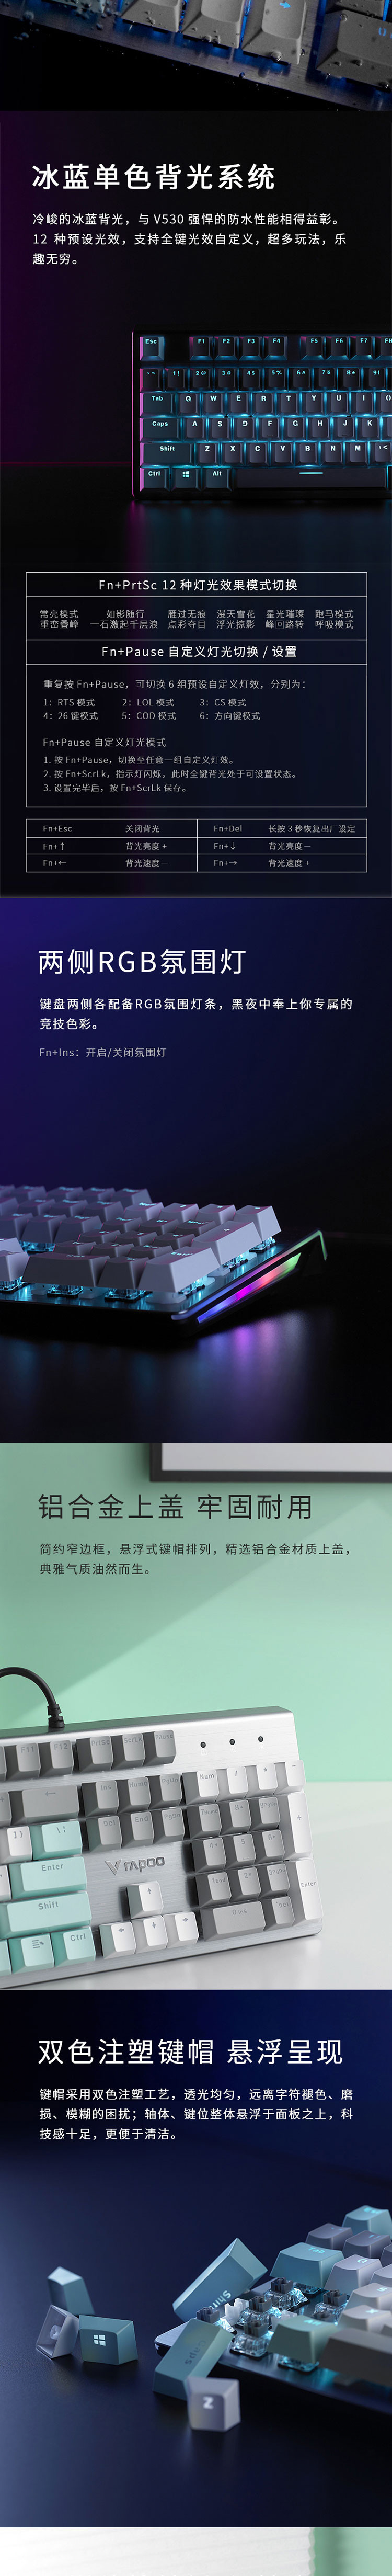 雷柏 V530 防水背光机械键盘 有线键盘 游戏键盘104键 IP68级防水防尘 红外银轴